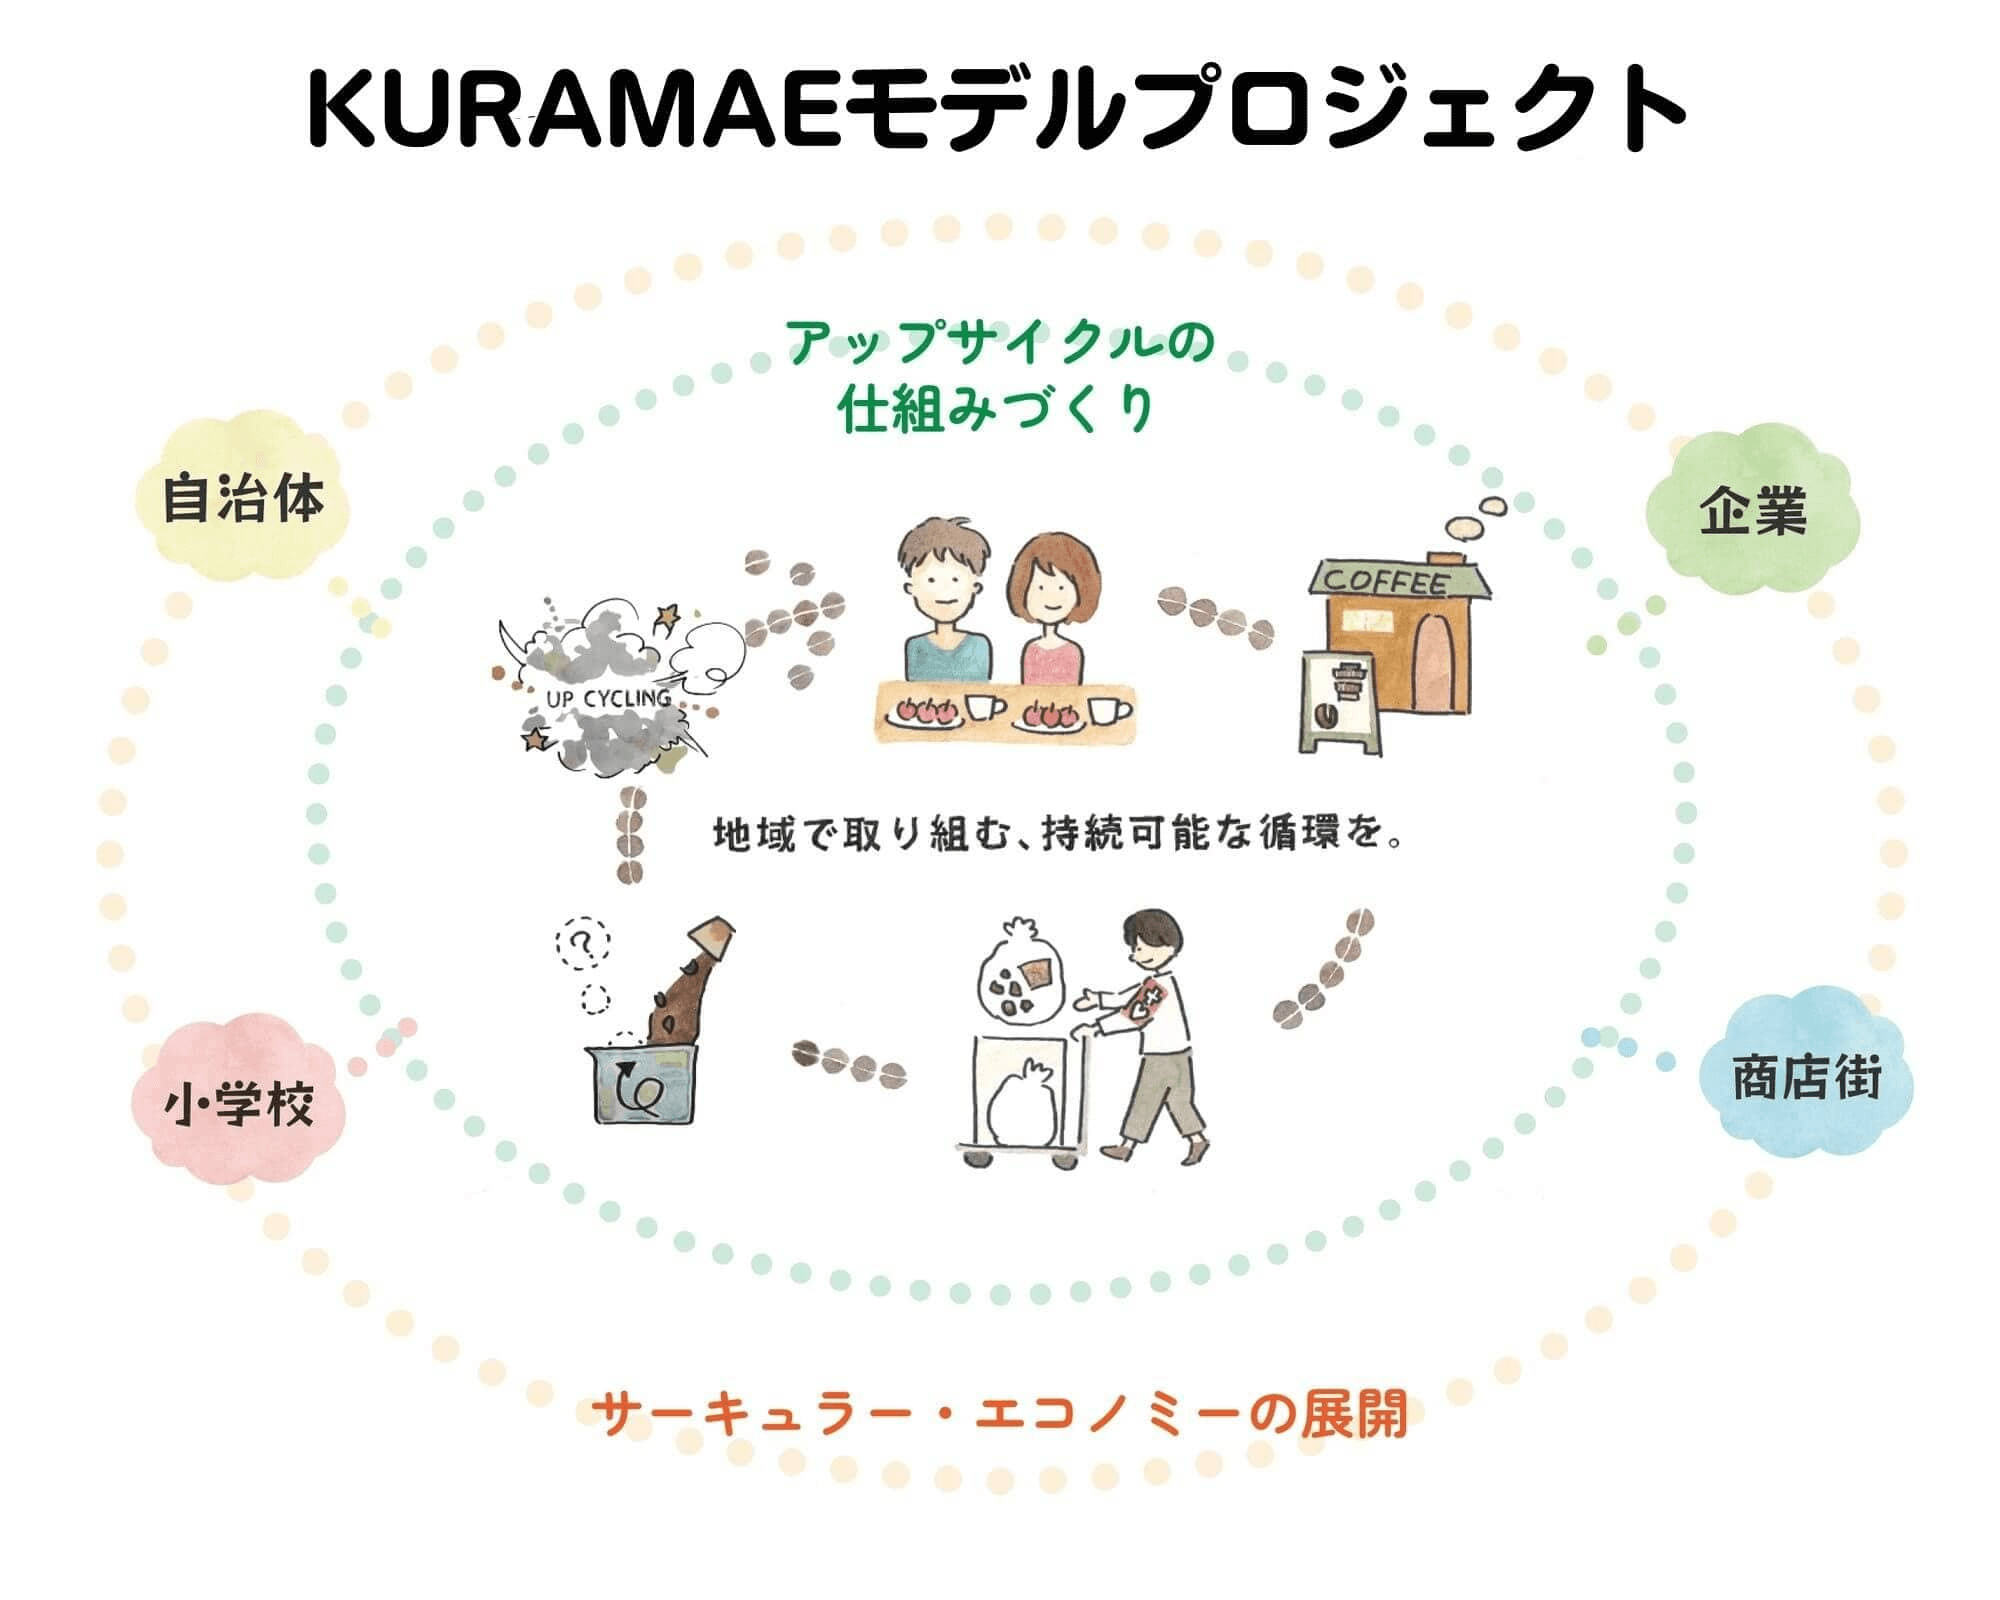 KURAMAEモデル（東京・蔵前発の地域循環モデル）のイメージイラスト。捨てられるモノや古くなったモノに、企業のものづくりの技術や専門家のアイディア、福祉作業所の手仕事などをいれることで新しい価値を与えて生まれ変わらせる「アップサイクル」に取り組んでいる。その知見やノウハウを他の地域・団体・企業とも共有して連携し「サーキュラー・エコノミー」を広げていく。